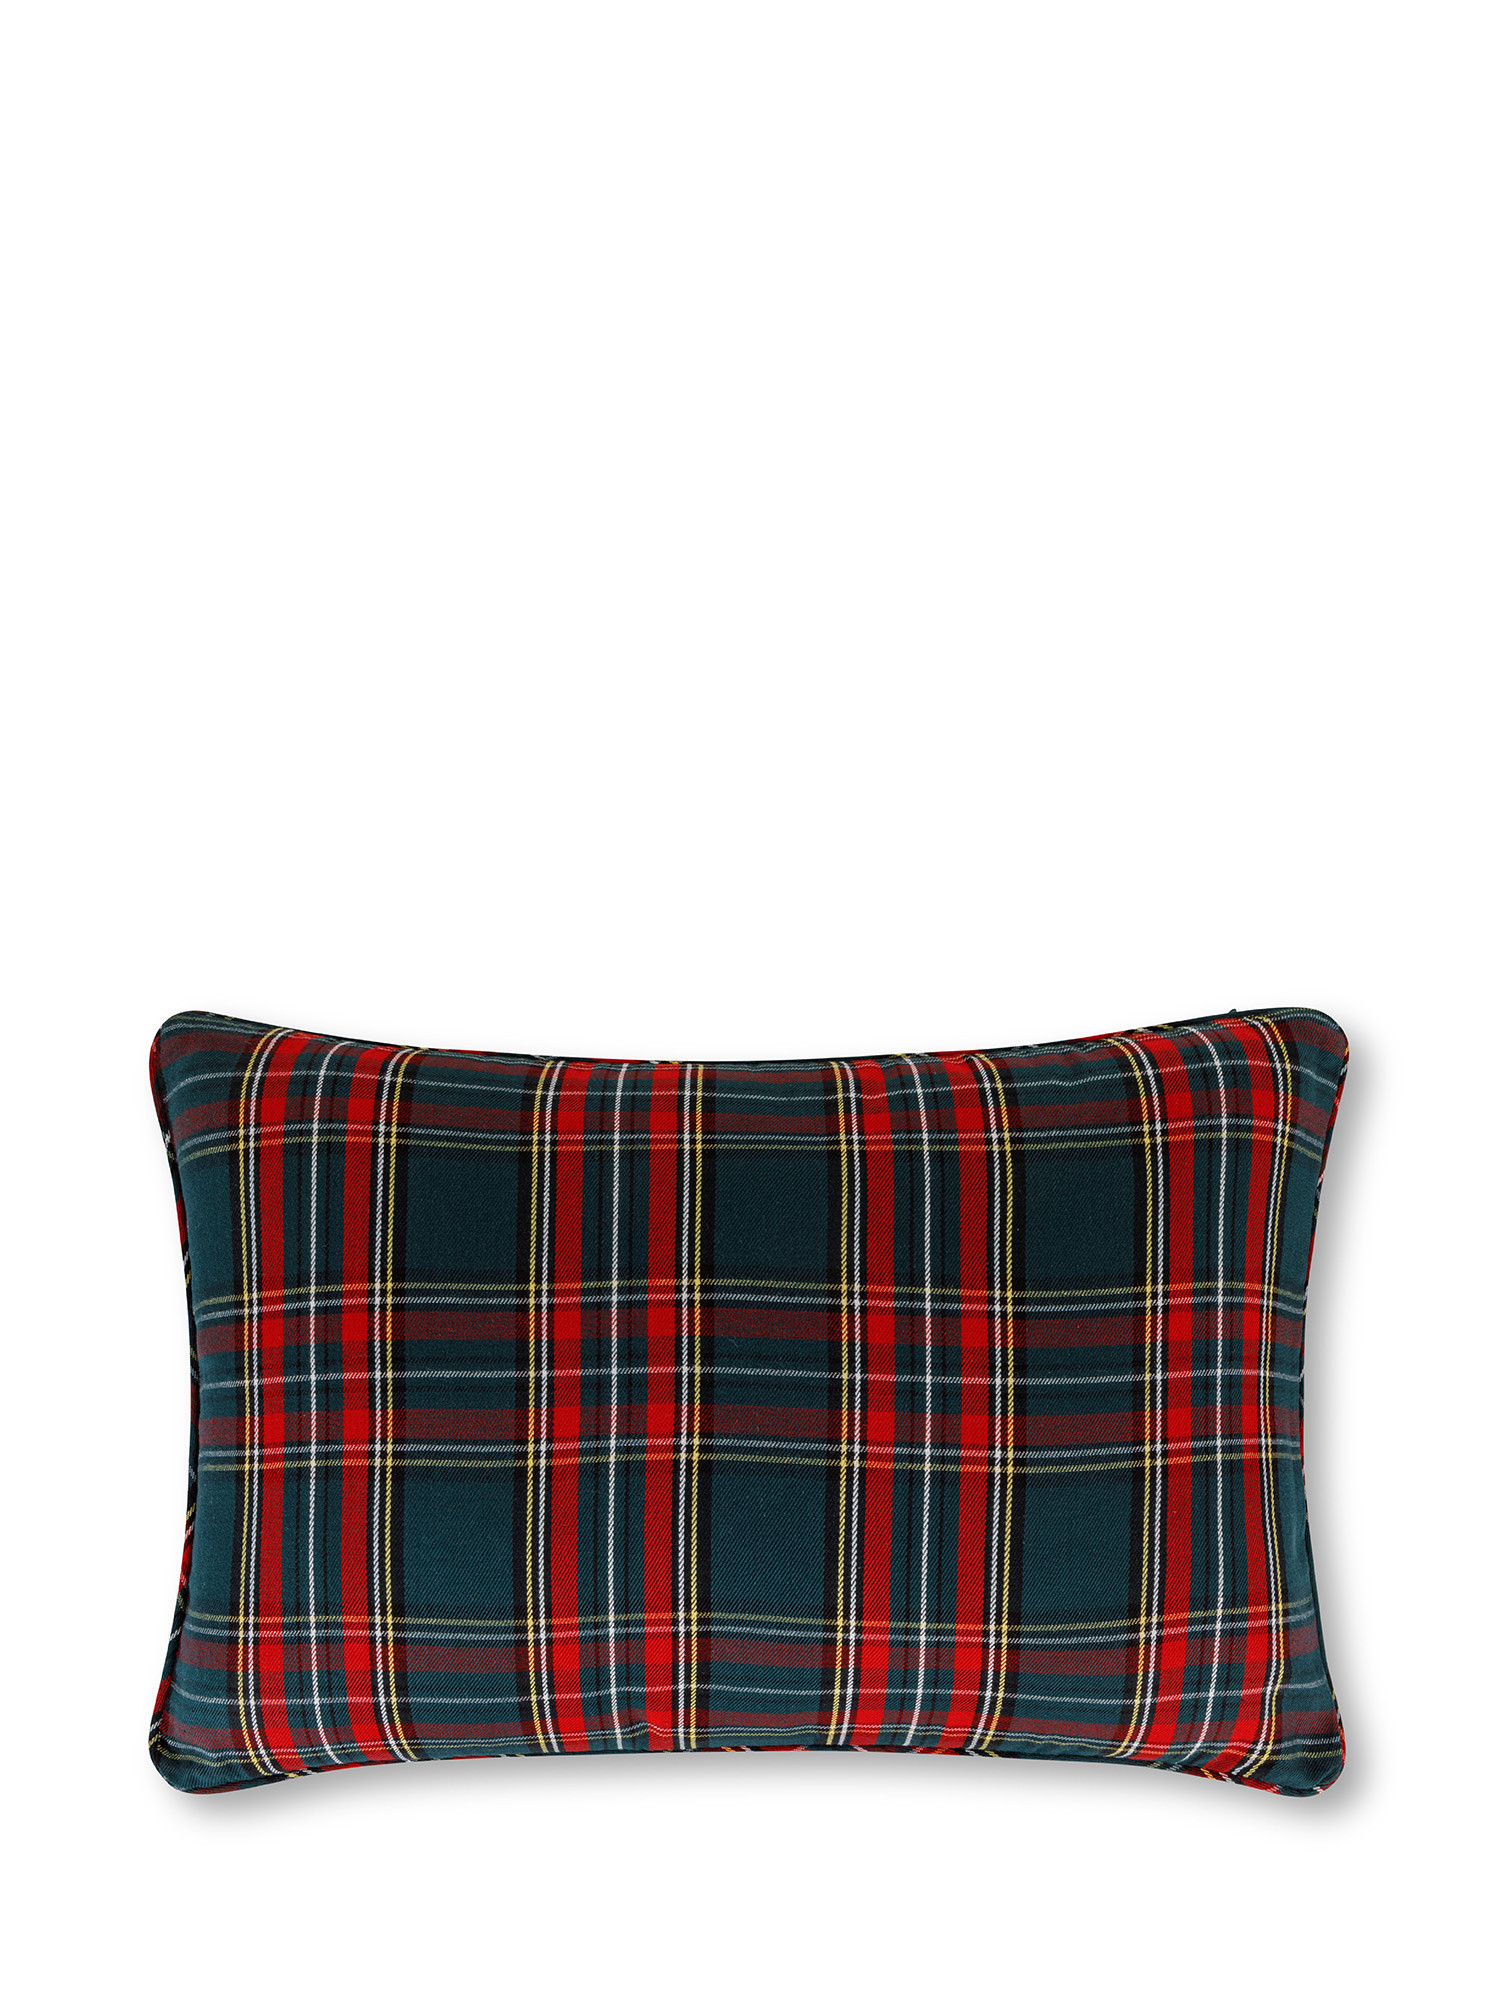 Tartan cushion 35x50 cm, Green, large image number 0